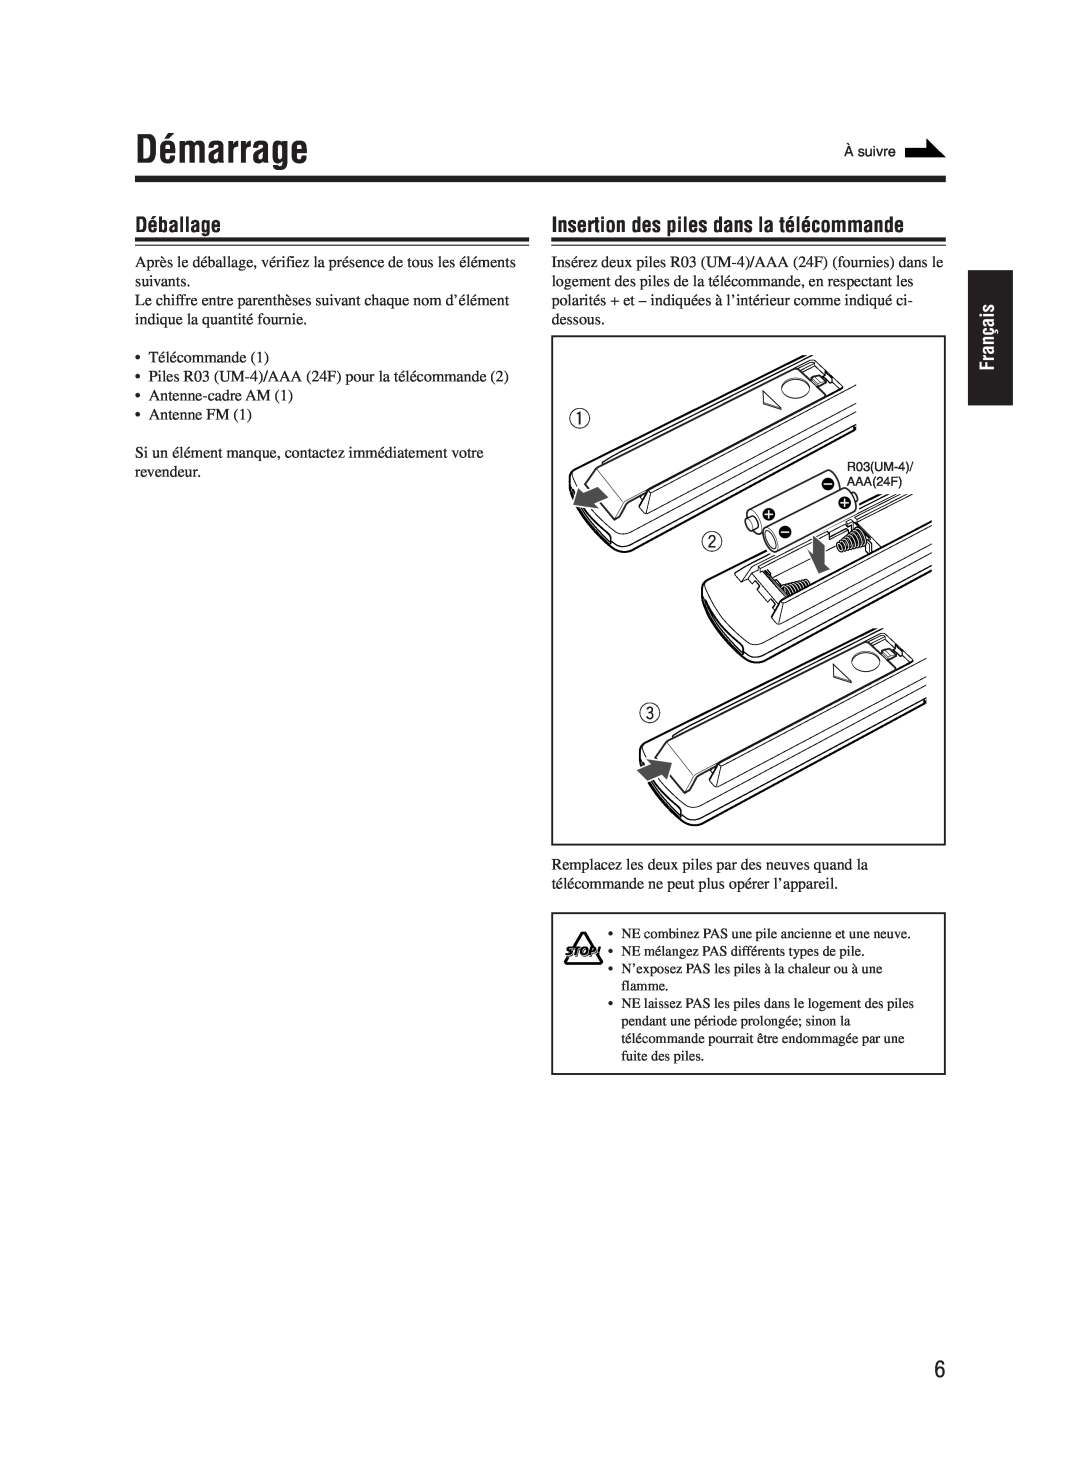 JVC UX-M55 manual Démarrage, Déballage, Insertion des piles dans la télécommande, Français 